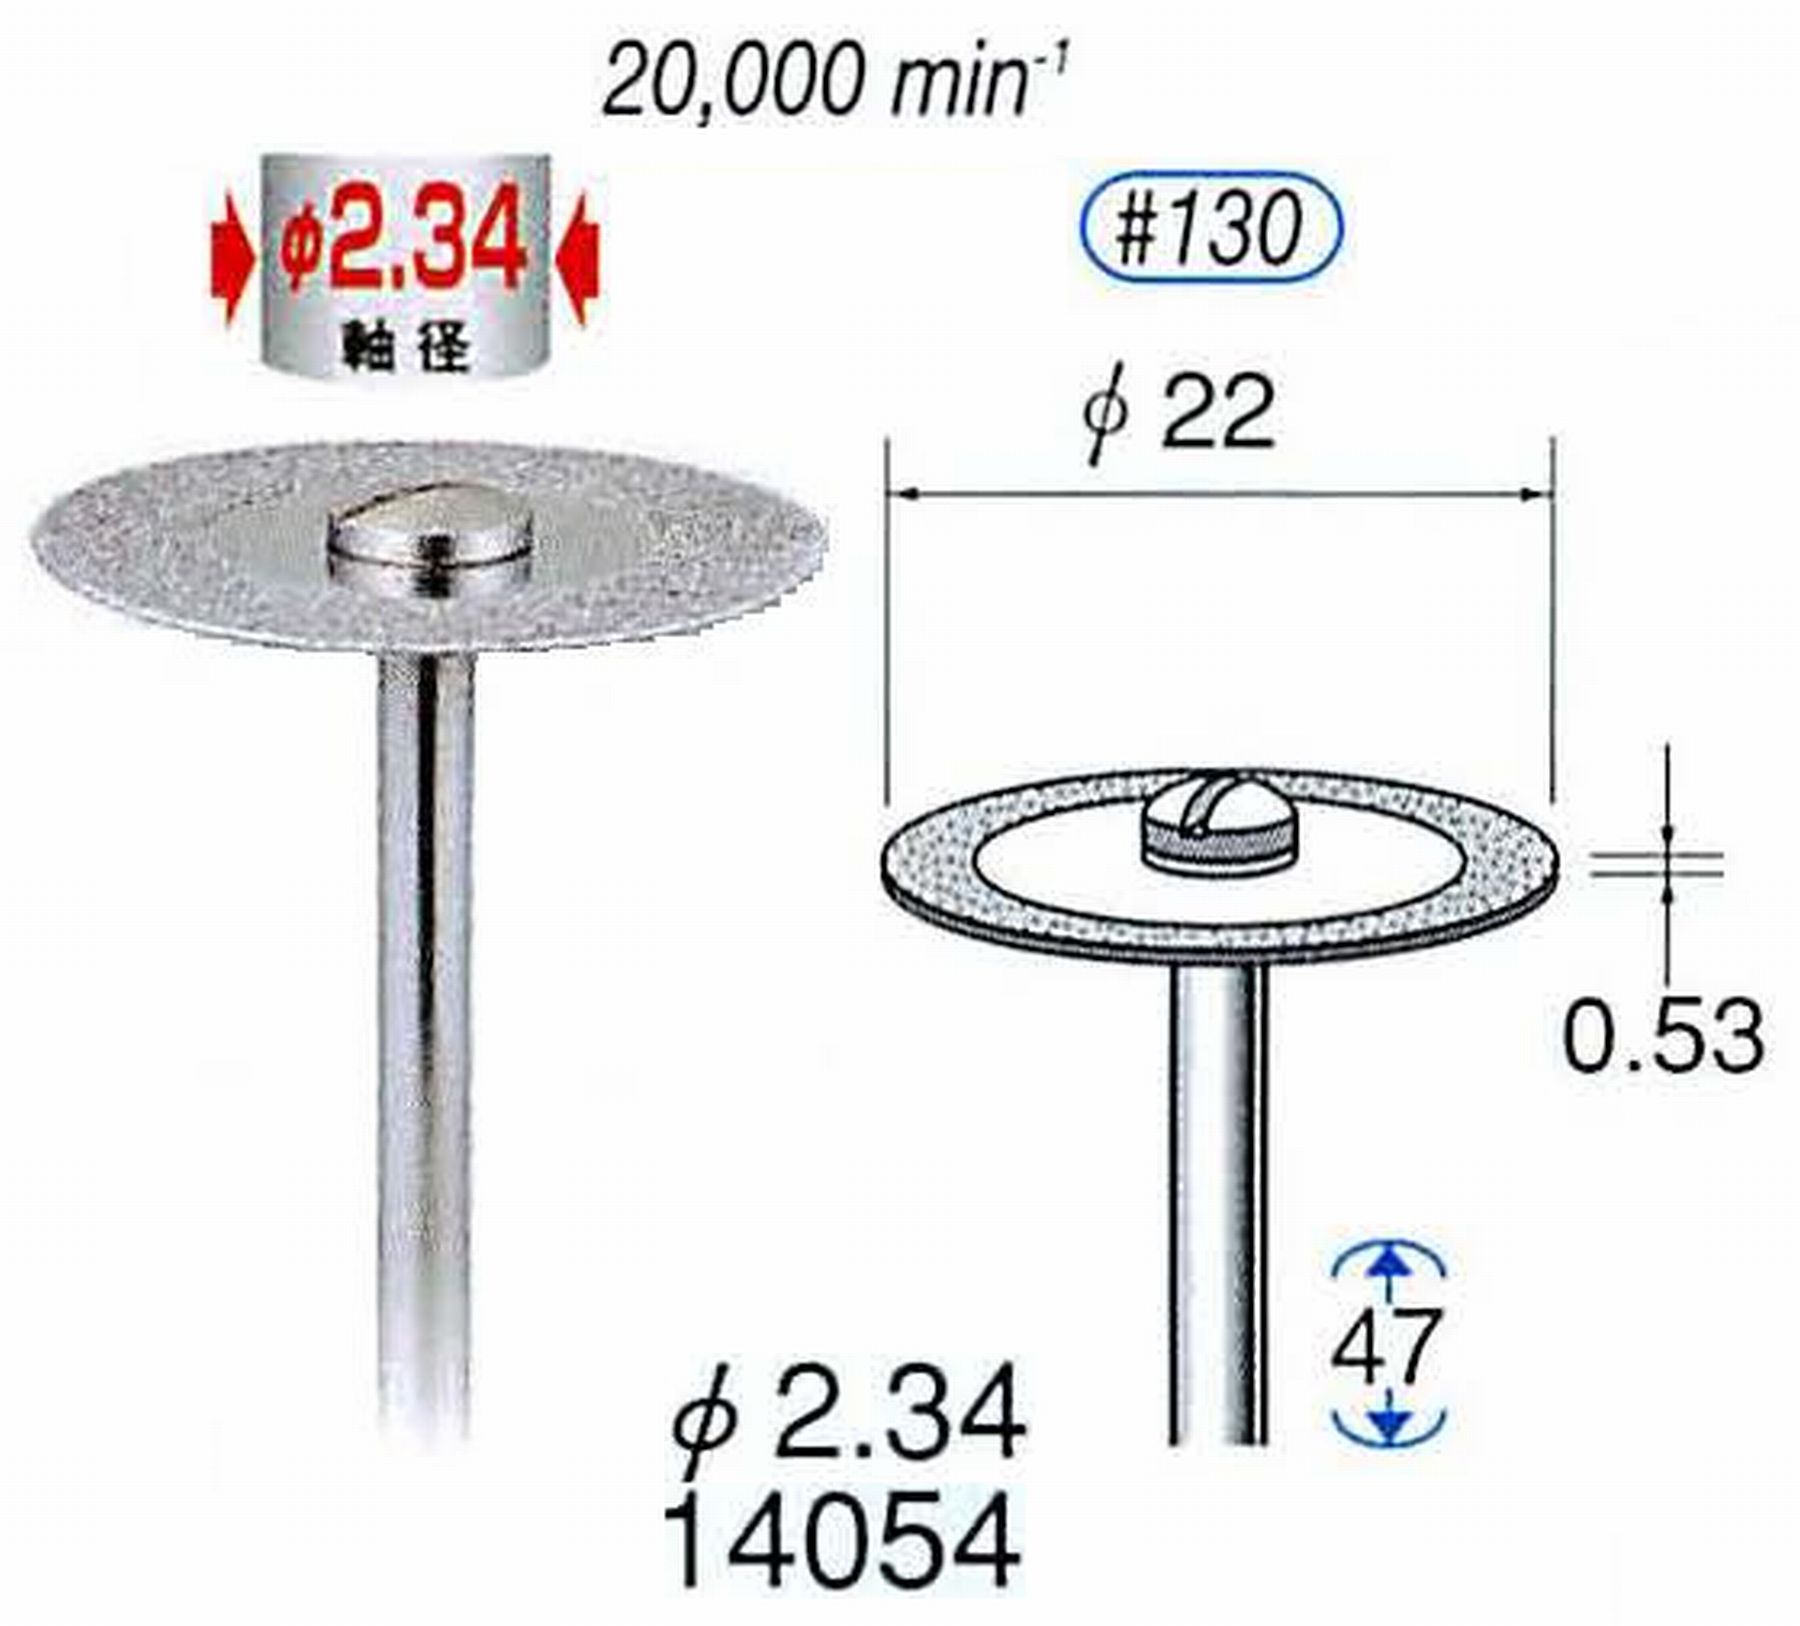 ナカニシ/NAKANISHI ダイヤモンドカッティングディスク 電着タイプ 軸径(シャンク)φ2.34mm 14054